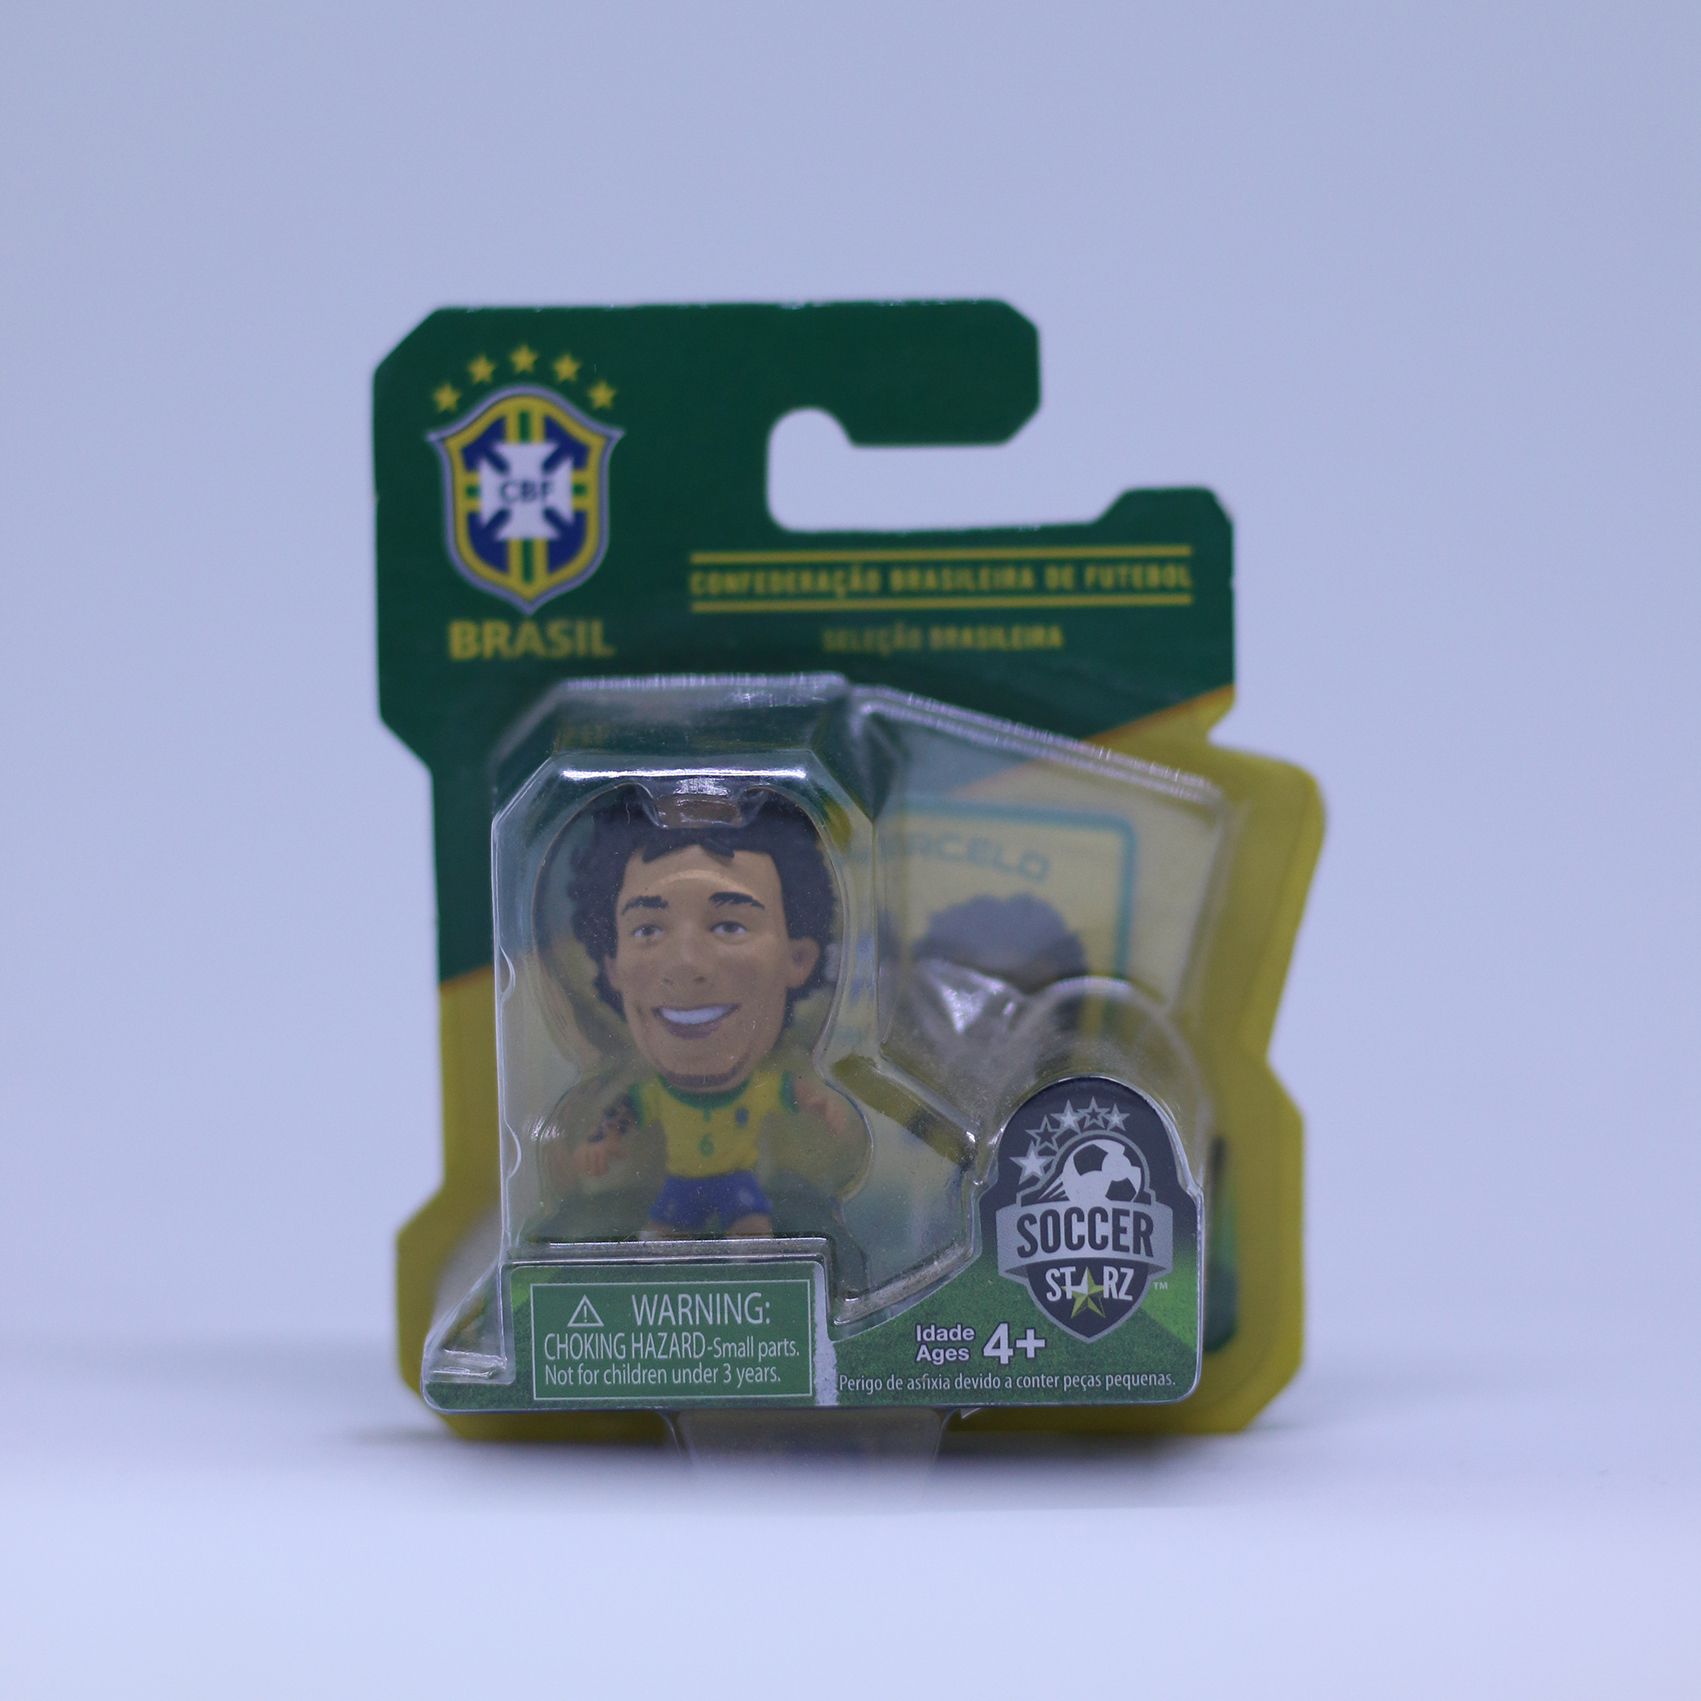 โมเดล นักฟุตบอล Marcelo Vieira - Home Kit  ลิขสิทธิ์แท้ BRAZIL